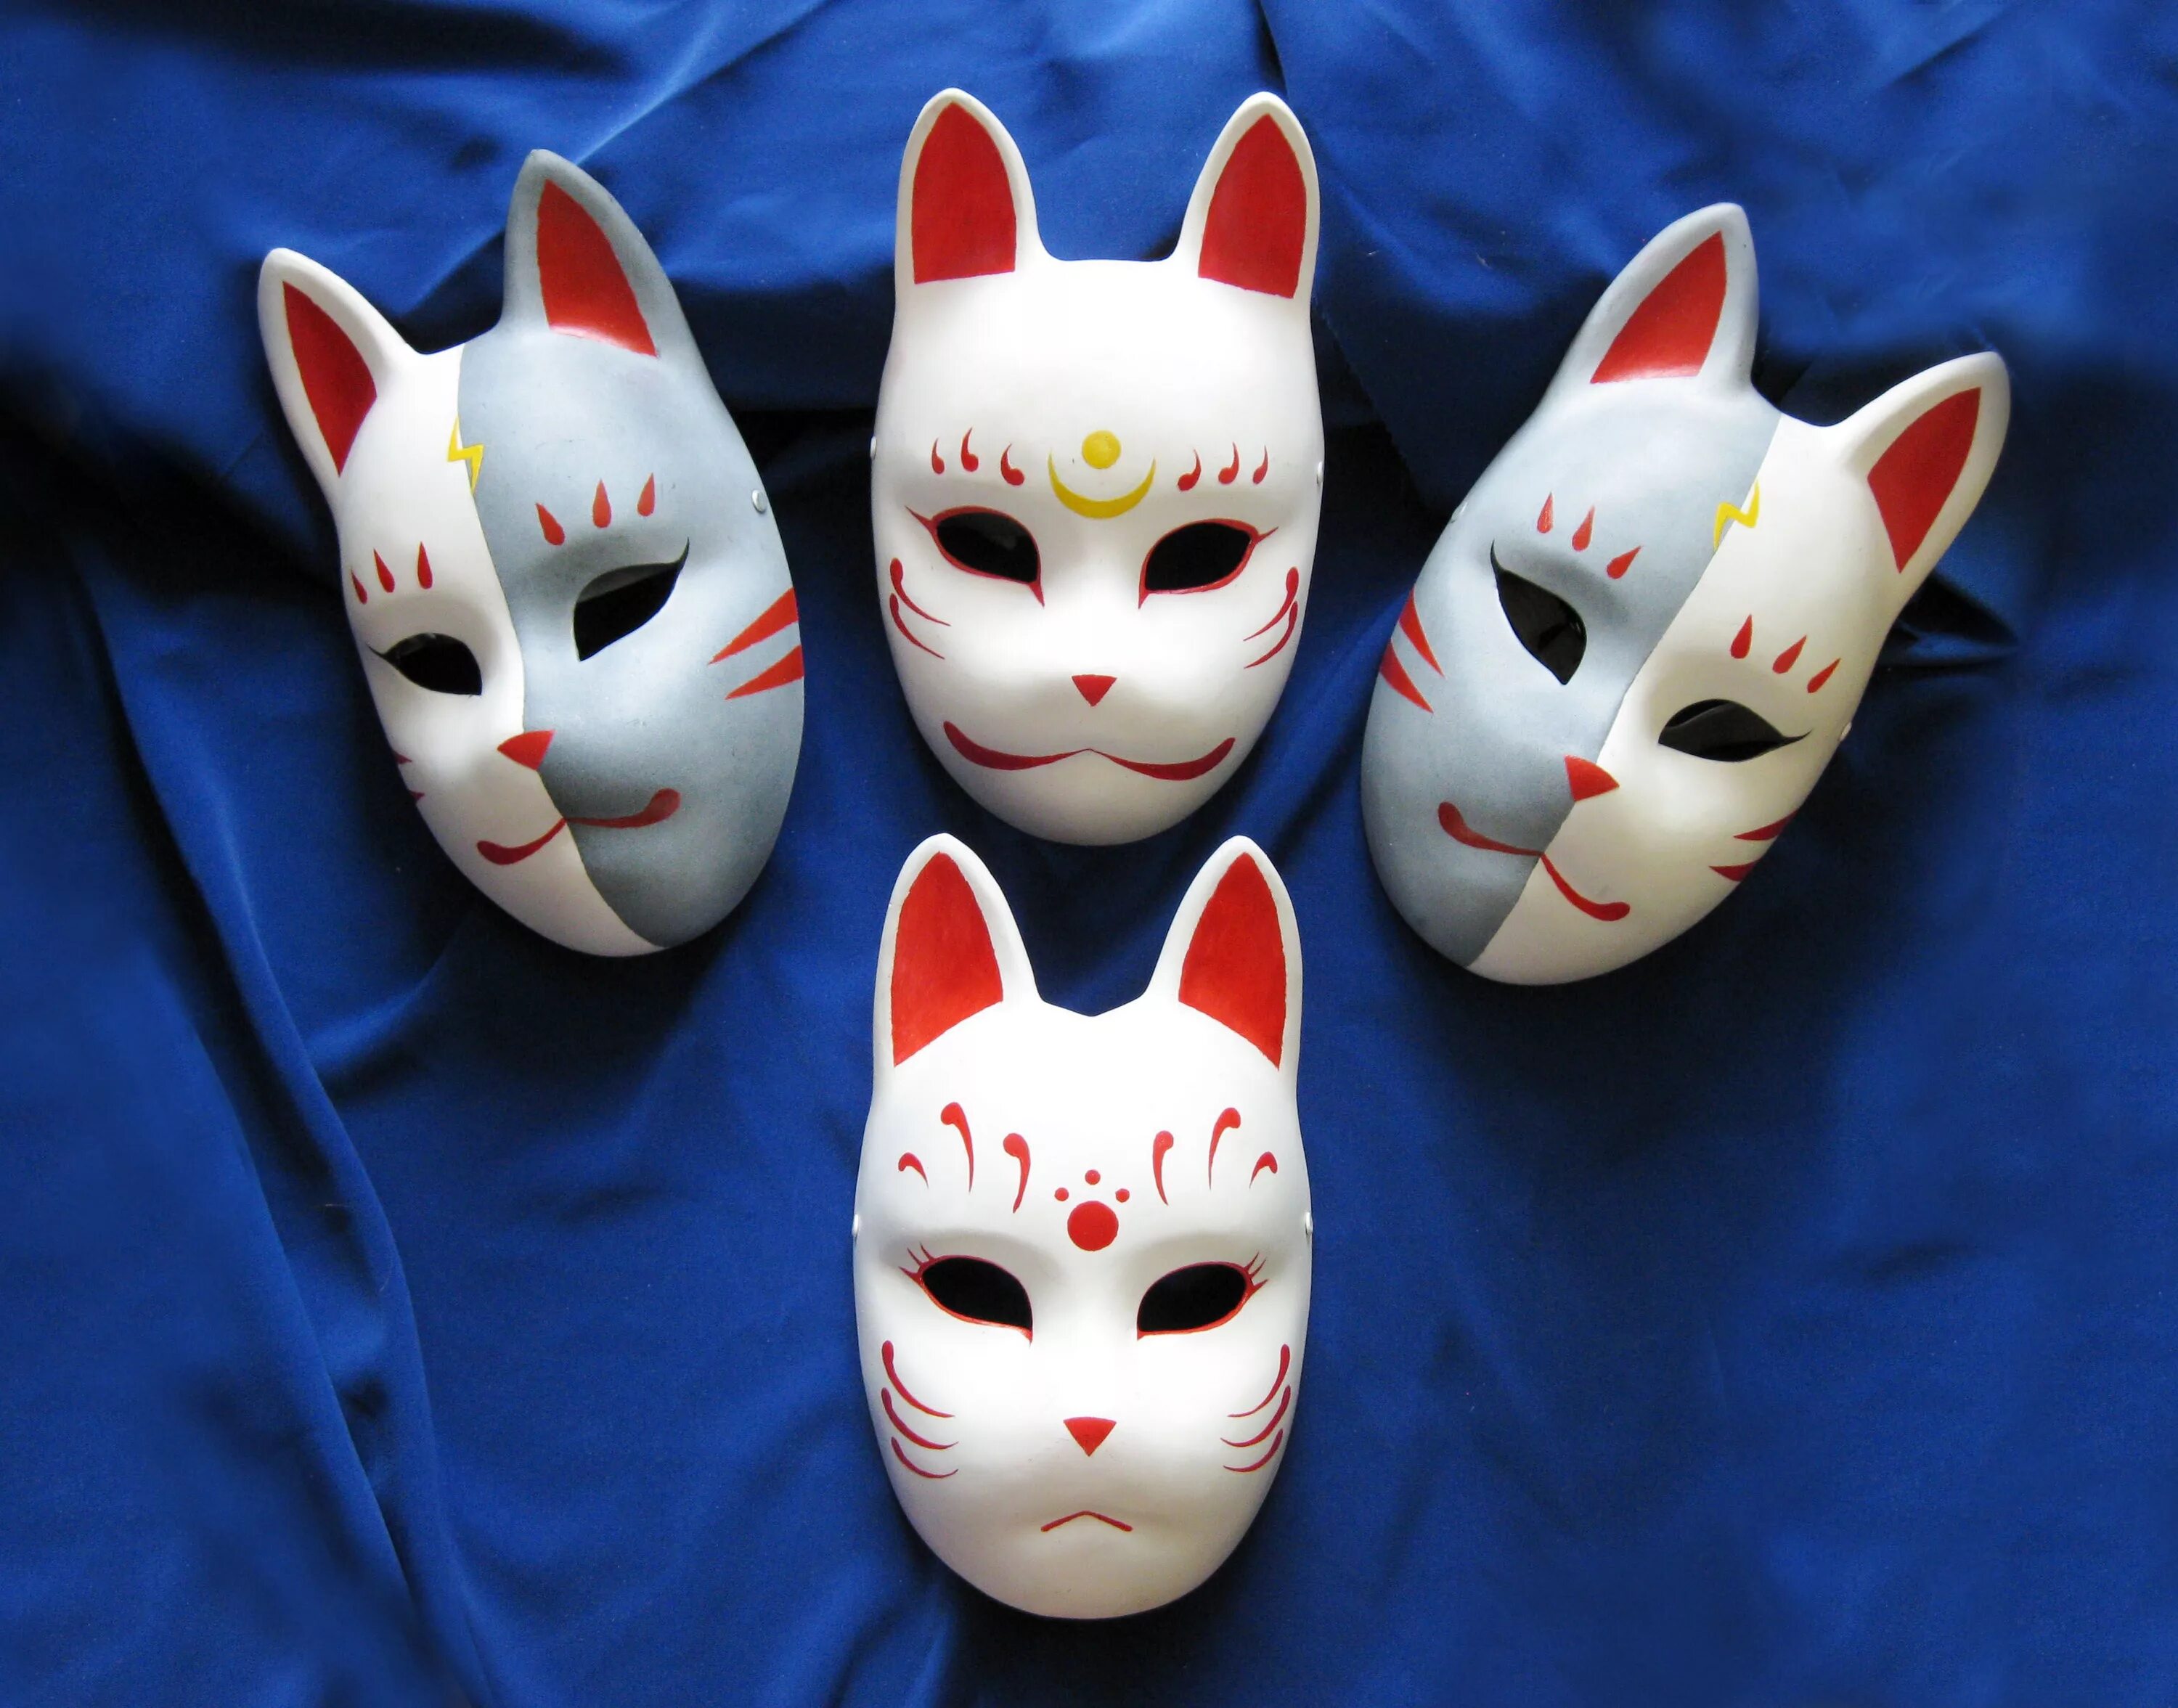 Японская маска кошки. Японская маска лисы Кицунэ. Маски Кабуки Кицунэ. Японские маски демонов Кицунэ. Маска Кицунэ в японском театре.